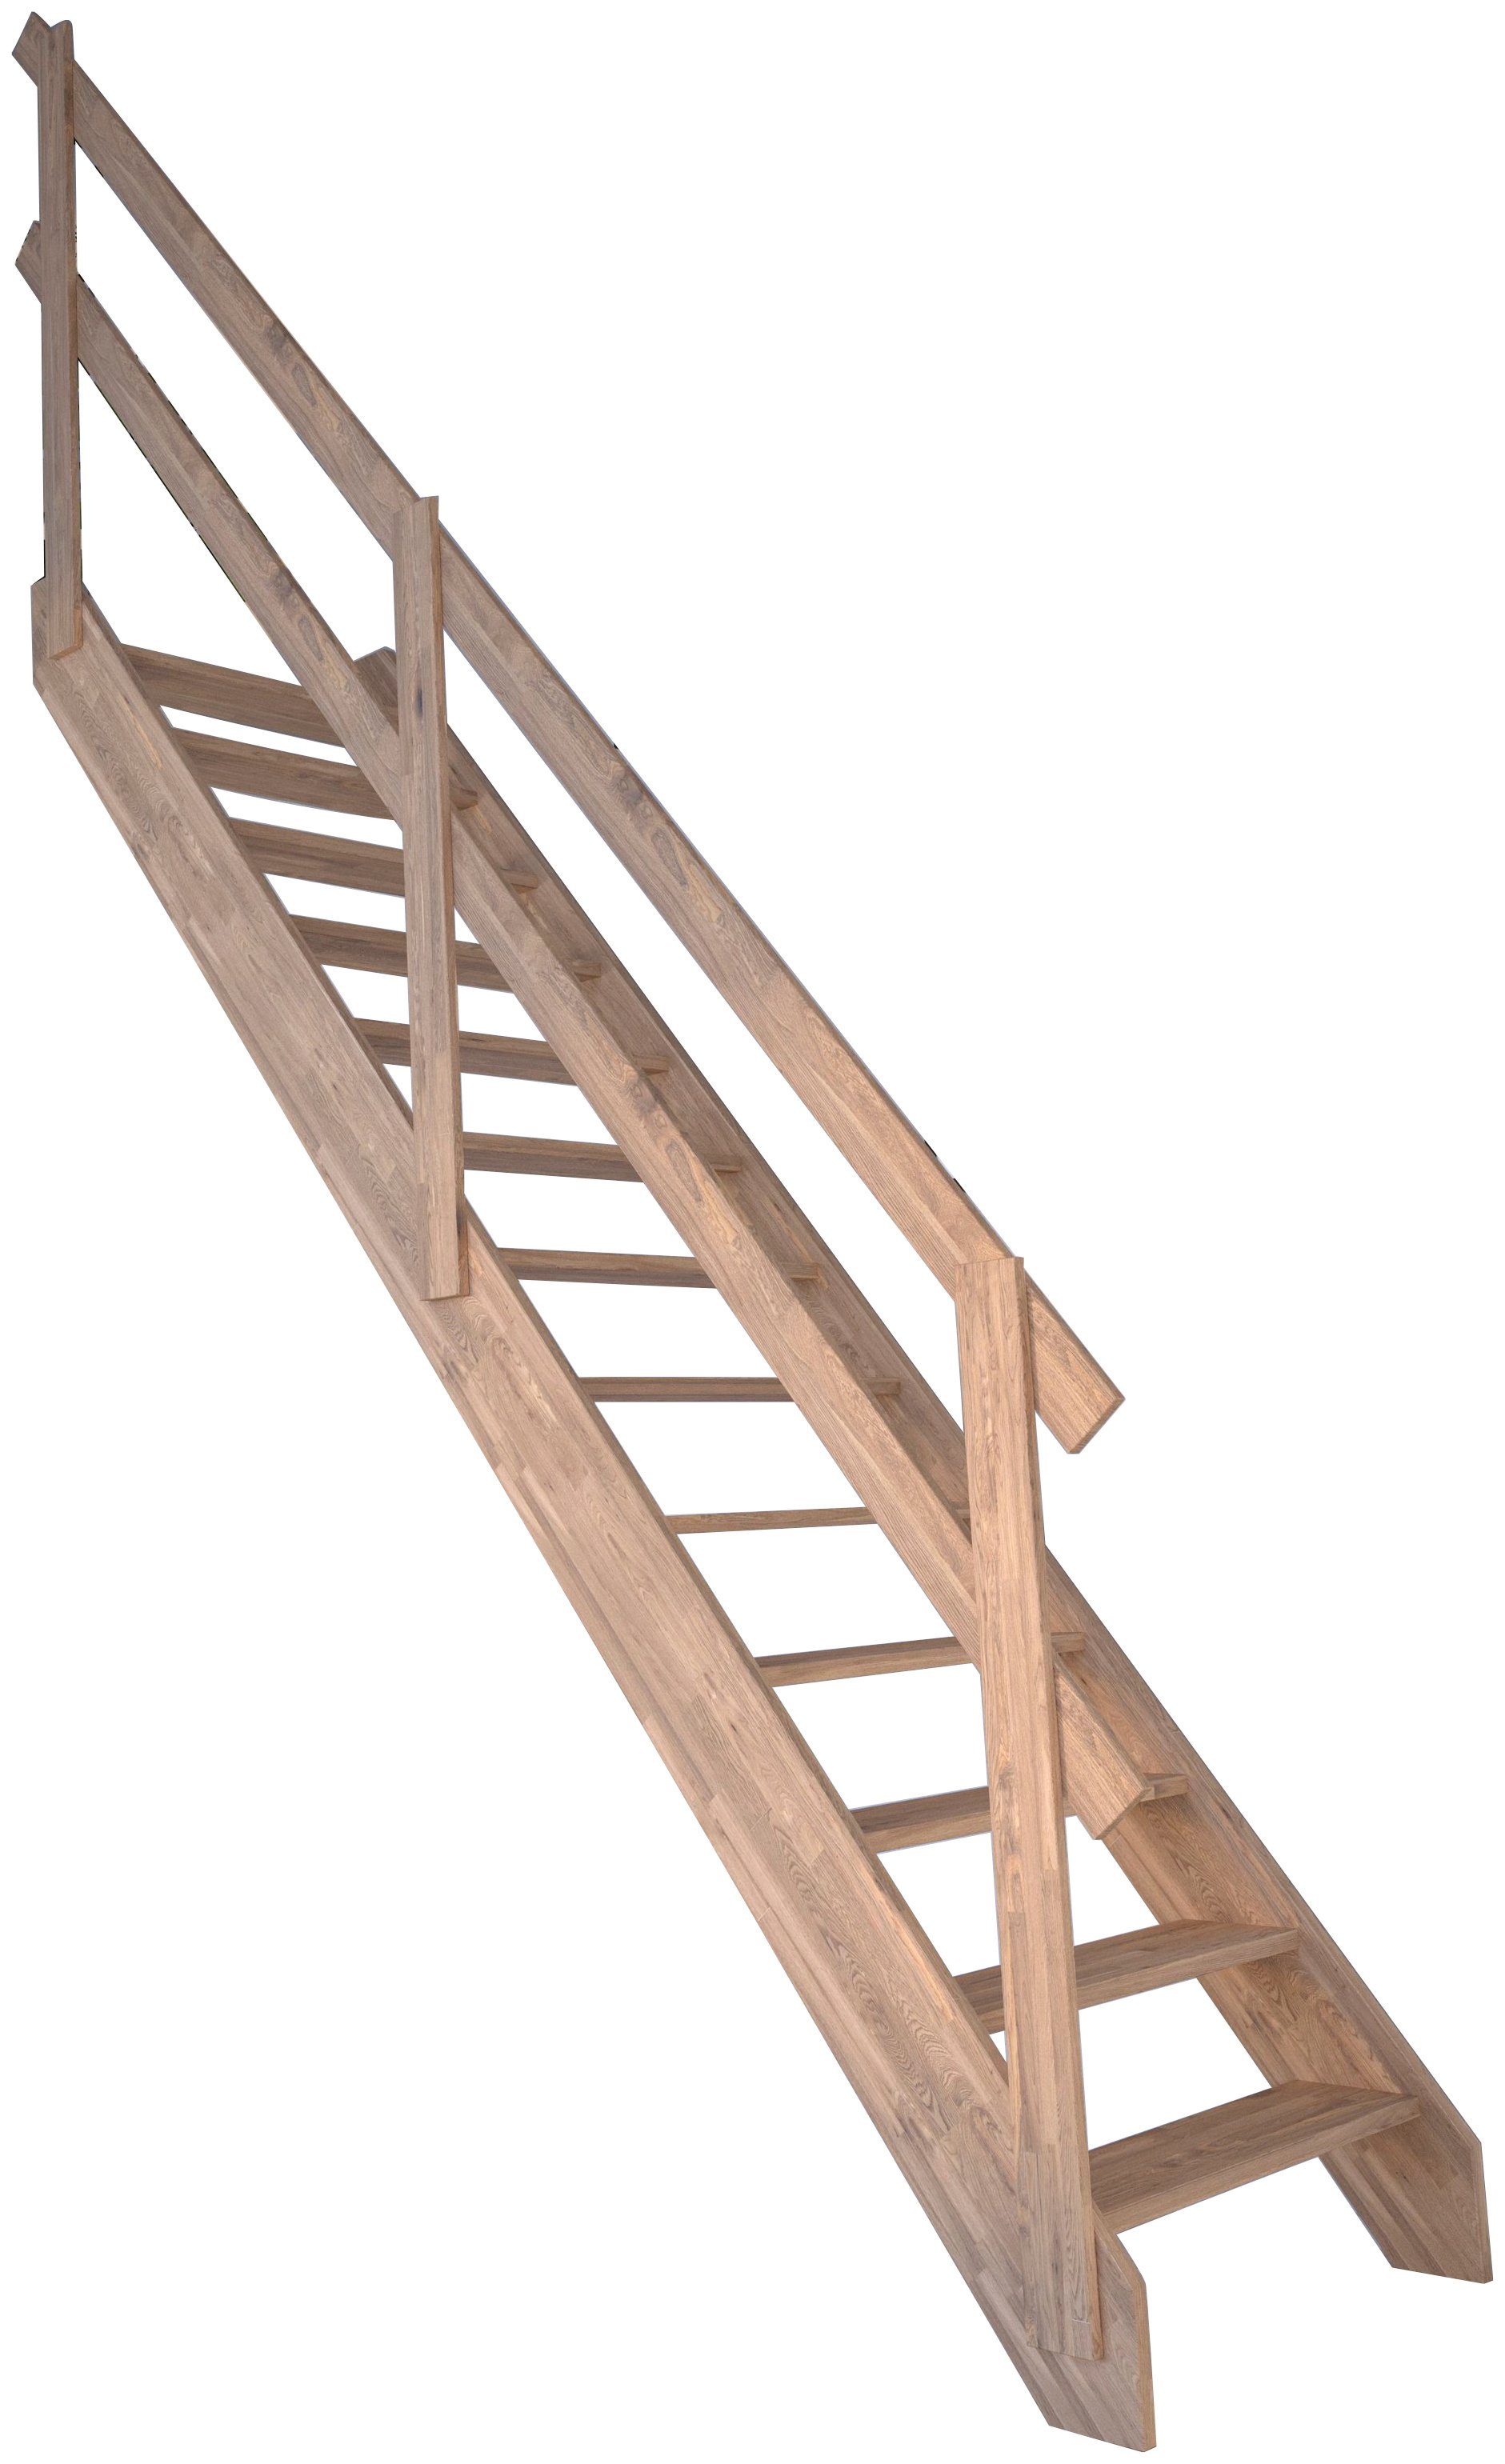 Starwood Raumspartreppe Massivholz Rhodos, Holzgeländer, für Geschosshöhen bis 300 cm, Stufen offen, Durchgehende Wangenteile